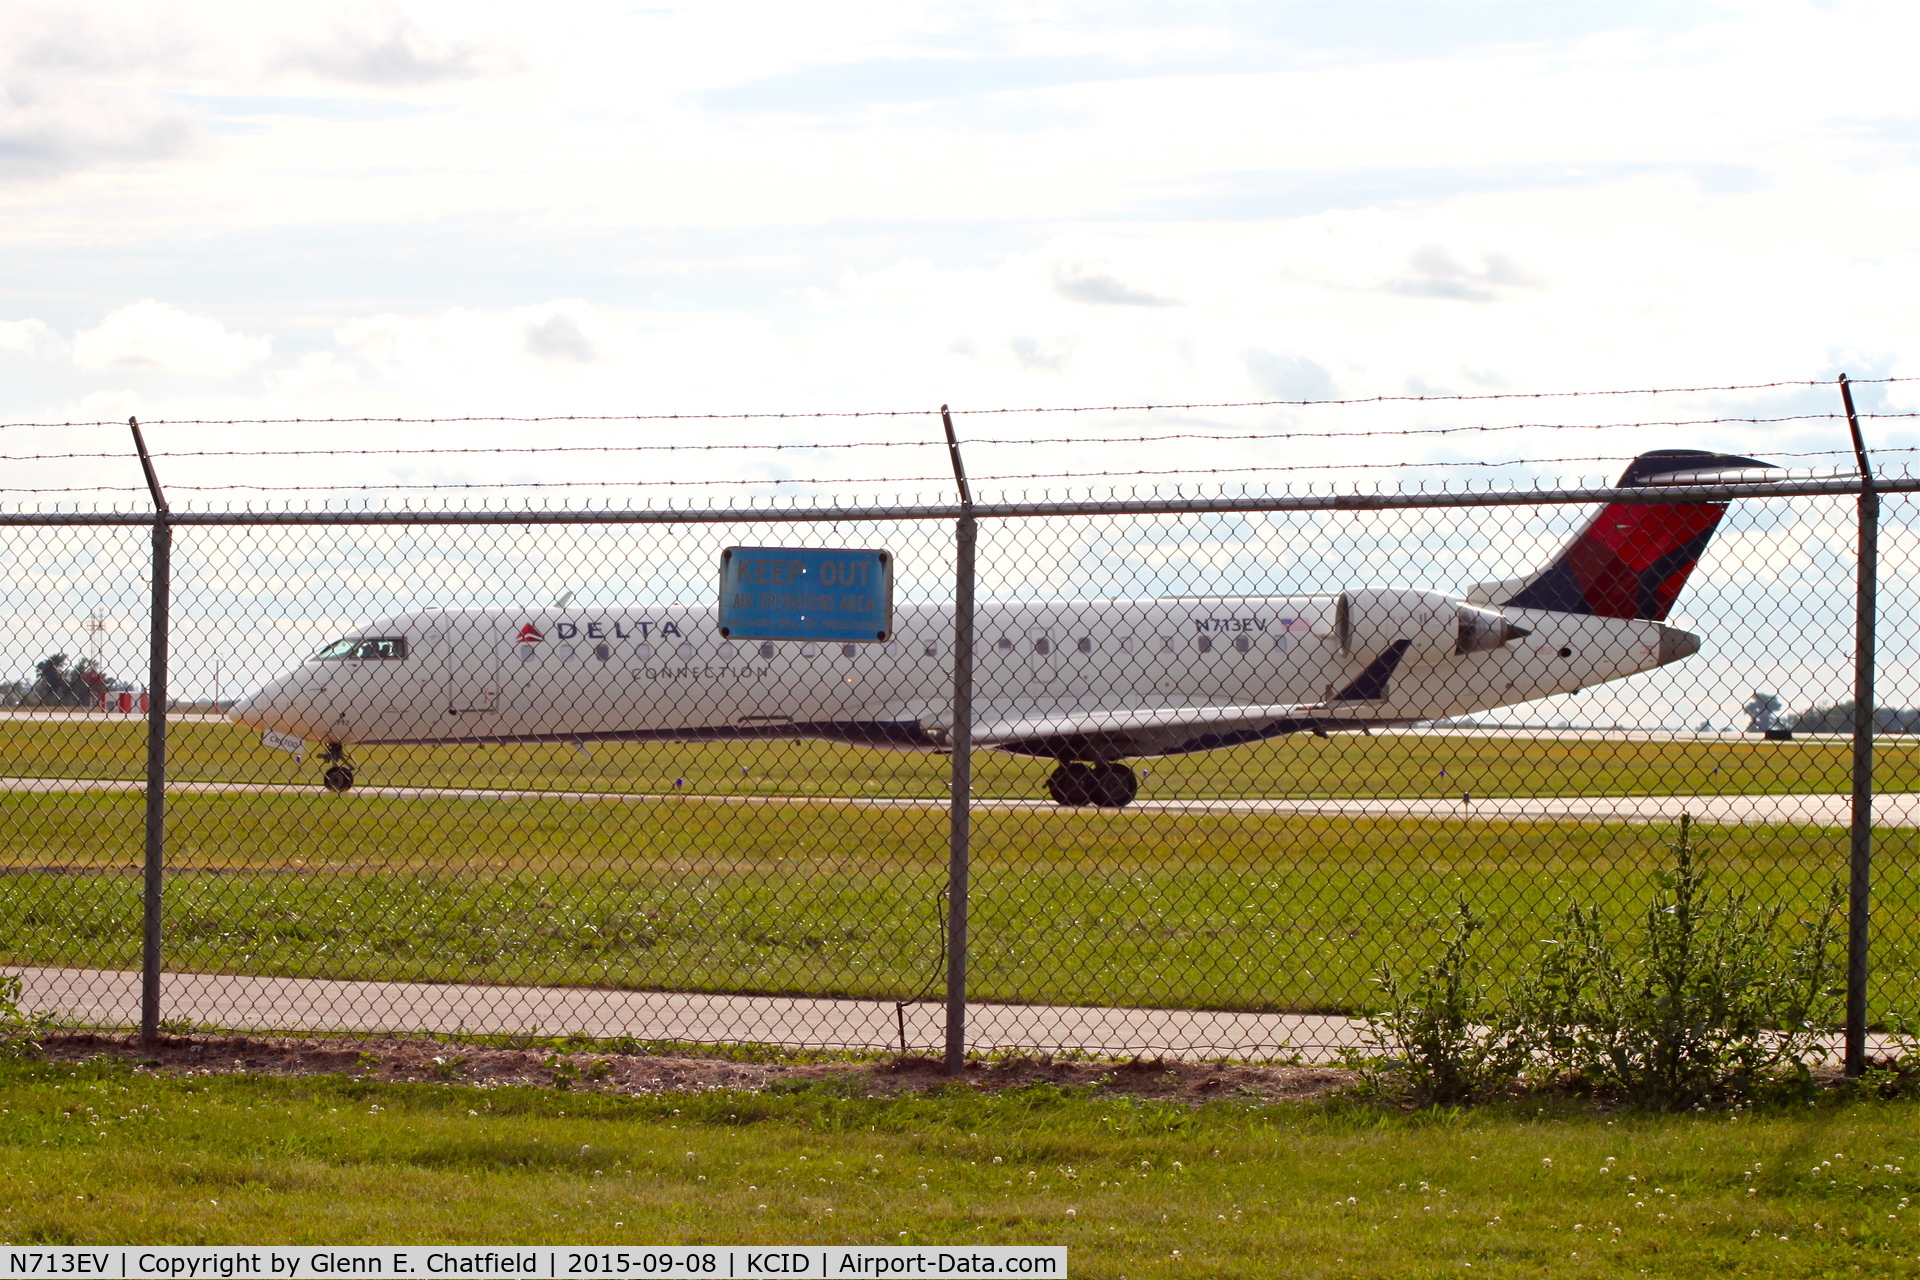 N713EV, 2003 Bombardier CRJ-701 (CL-600-2C10) Regional Jet C/N 10081, Ready for departure at Runway 27